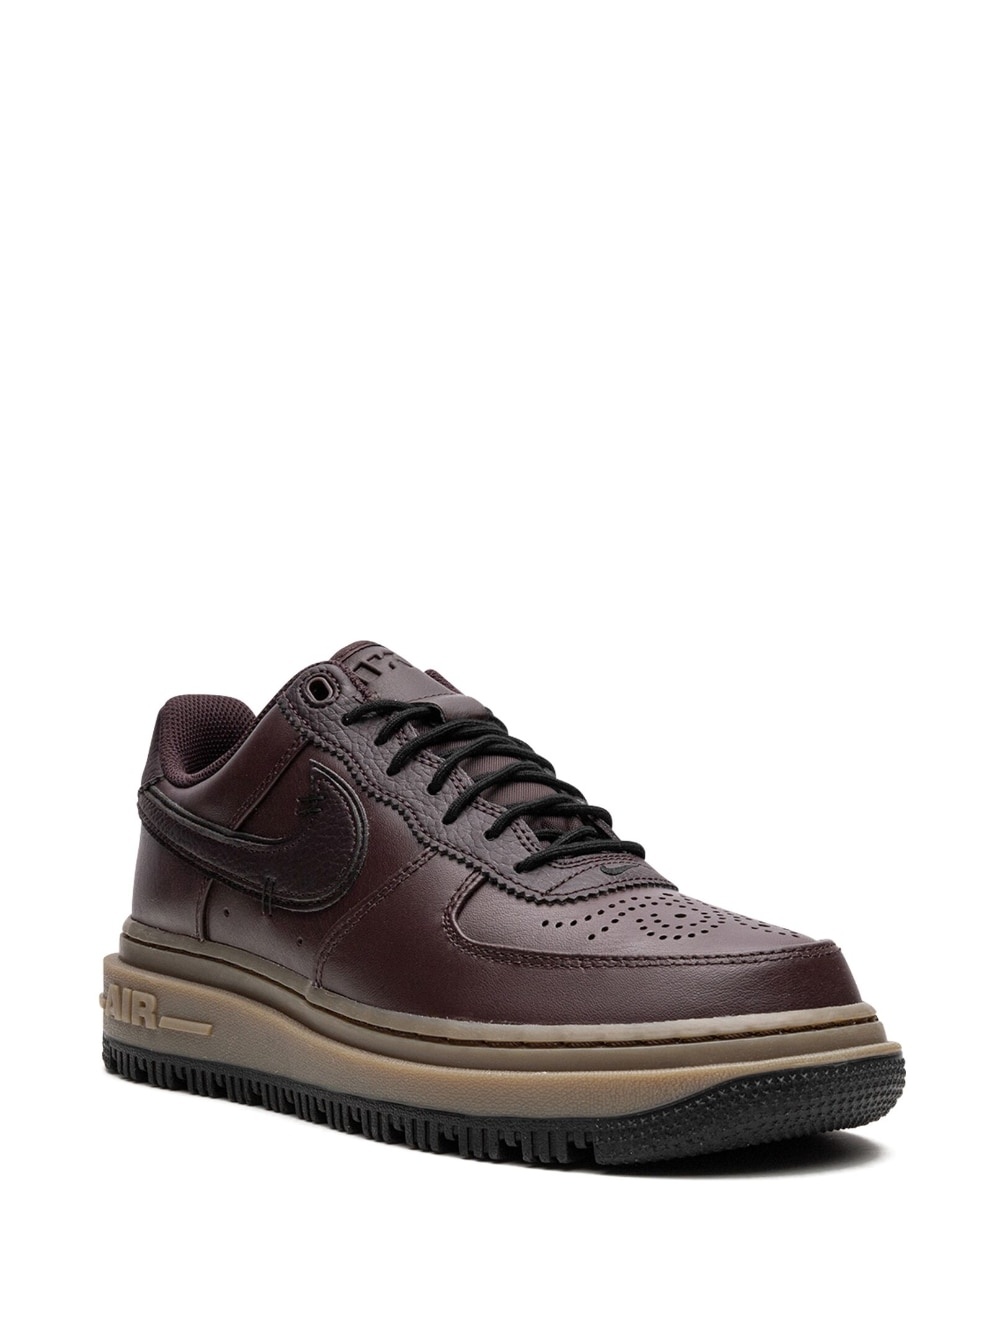 Air Force 1 Low Luxe "Brown Basalt" sneakers - 2